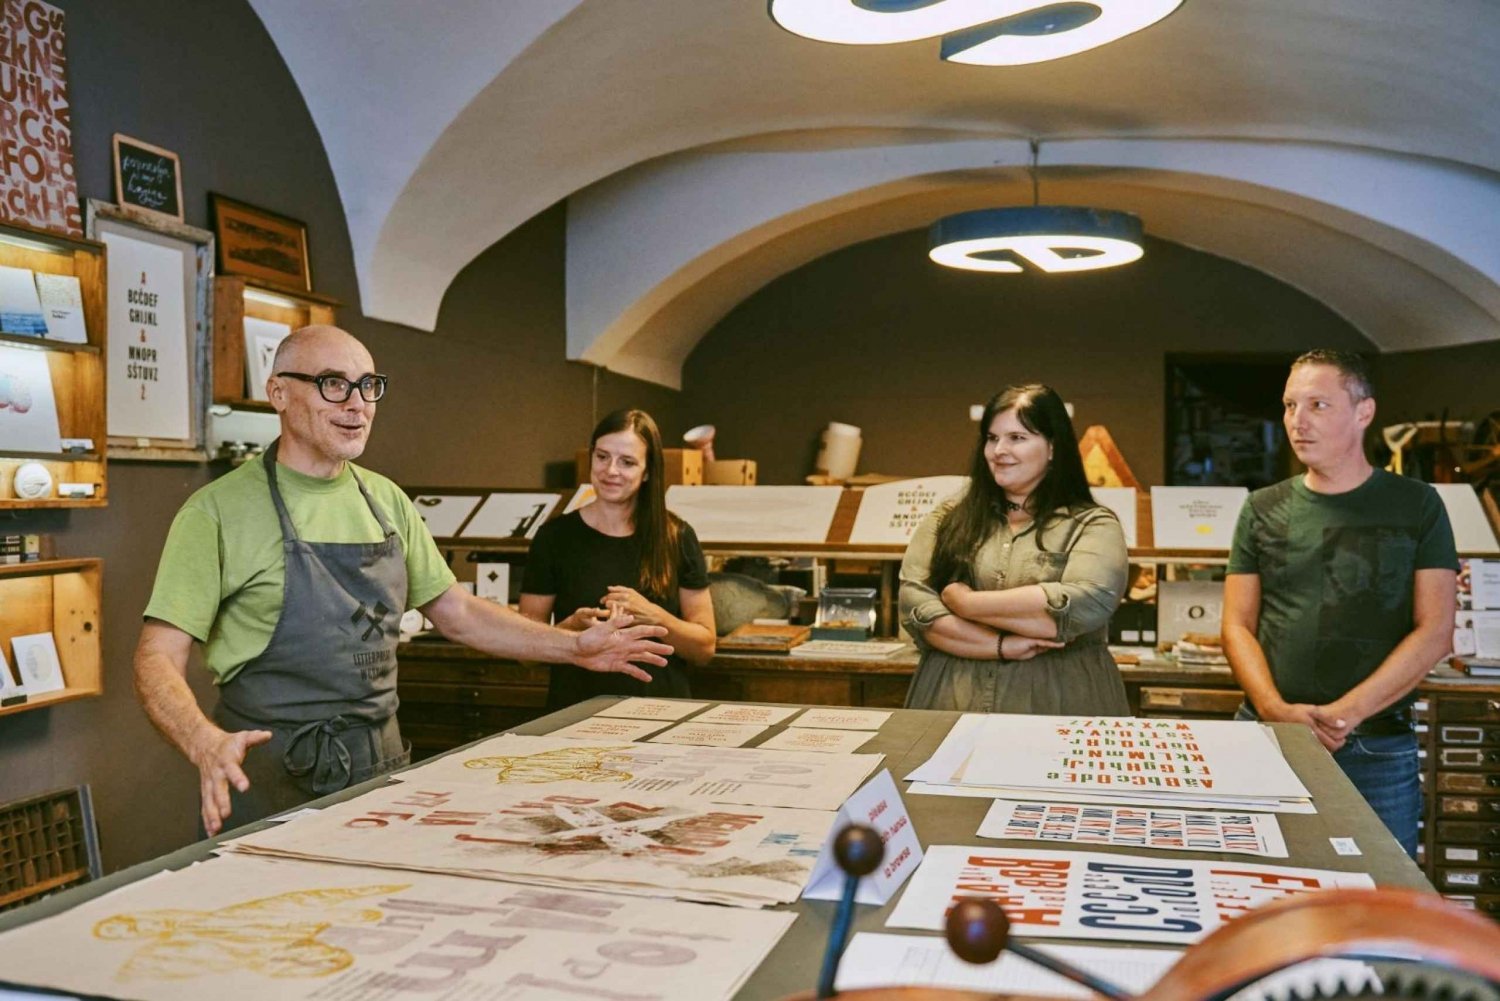 Liubliana: Imprime un cartel en una antigua imprenta